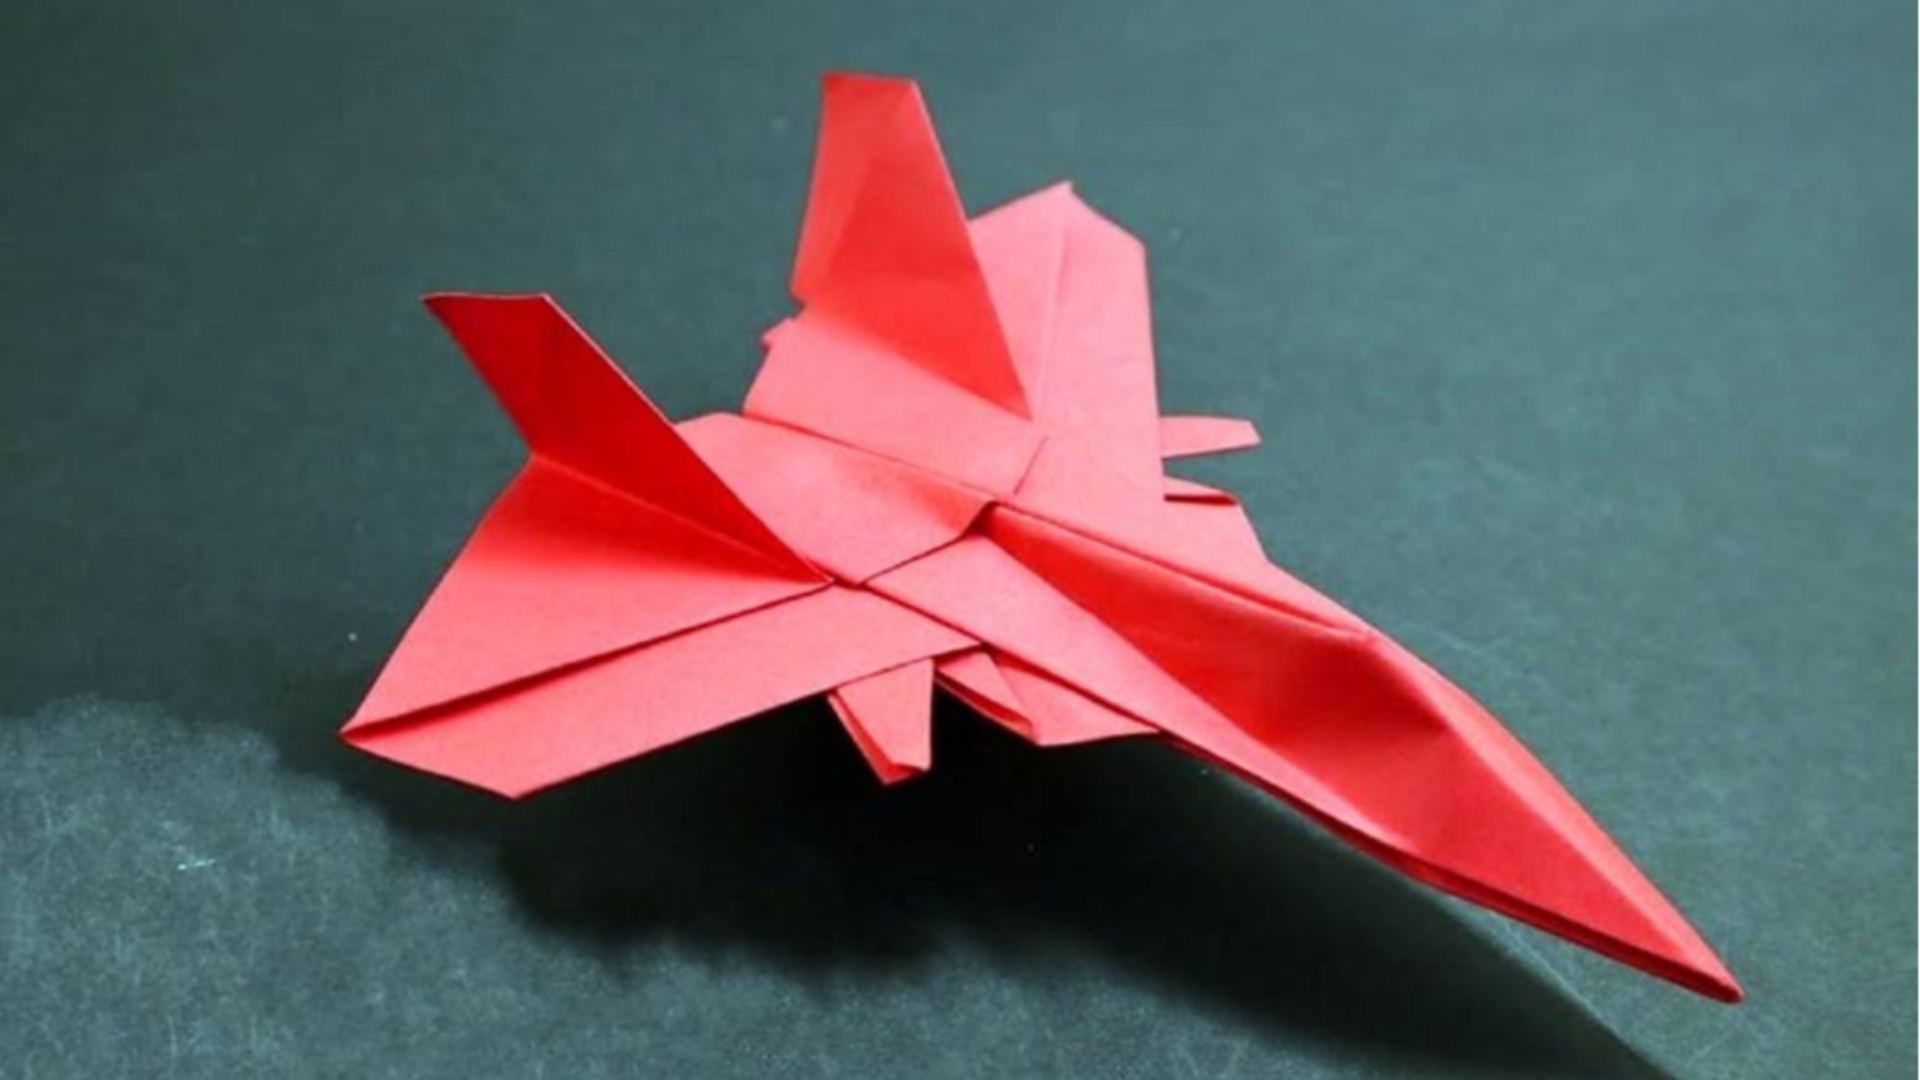 关于纸飞机的折法简单的信息